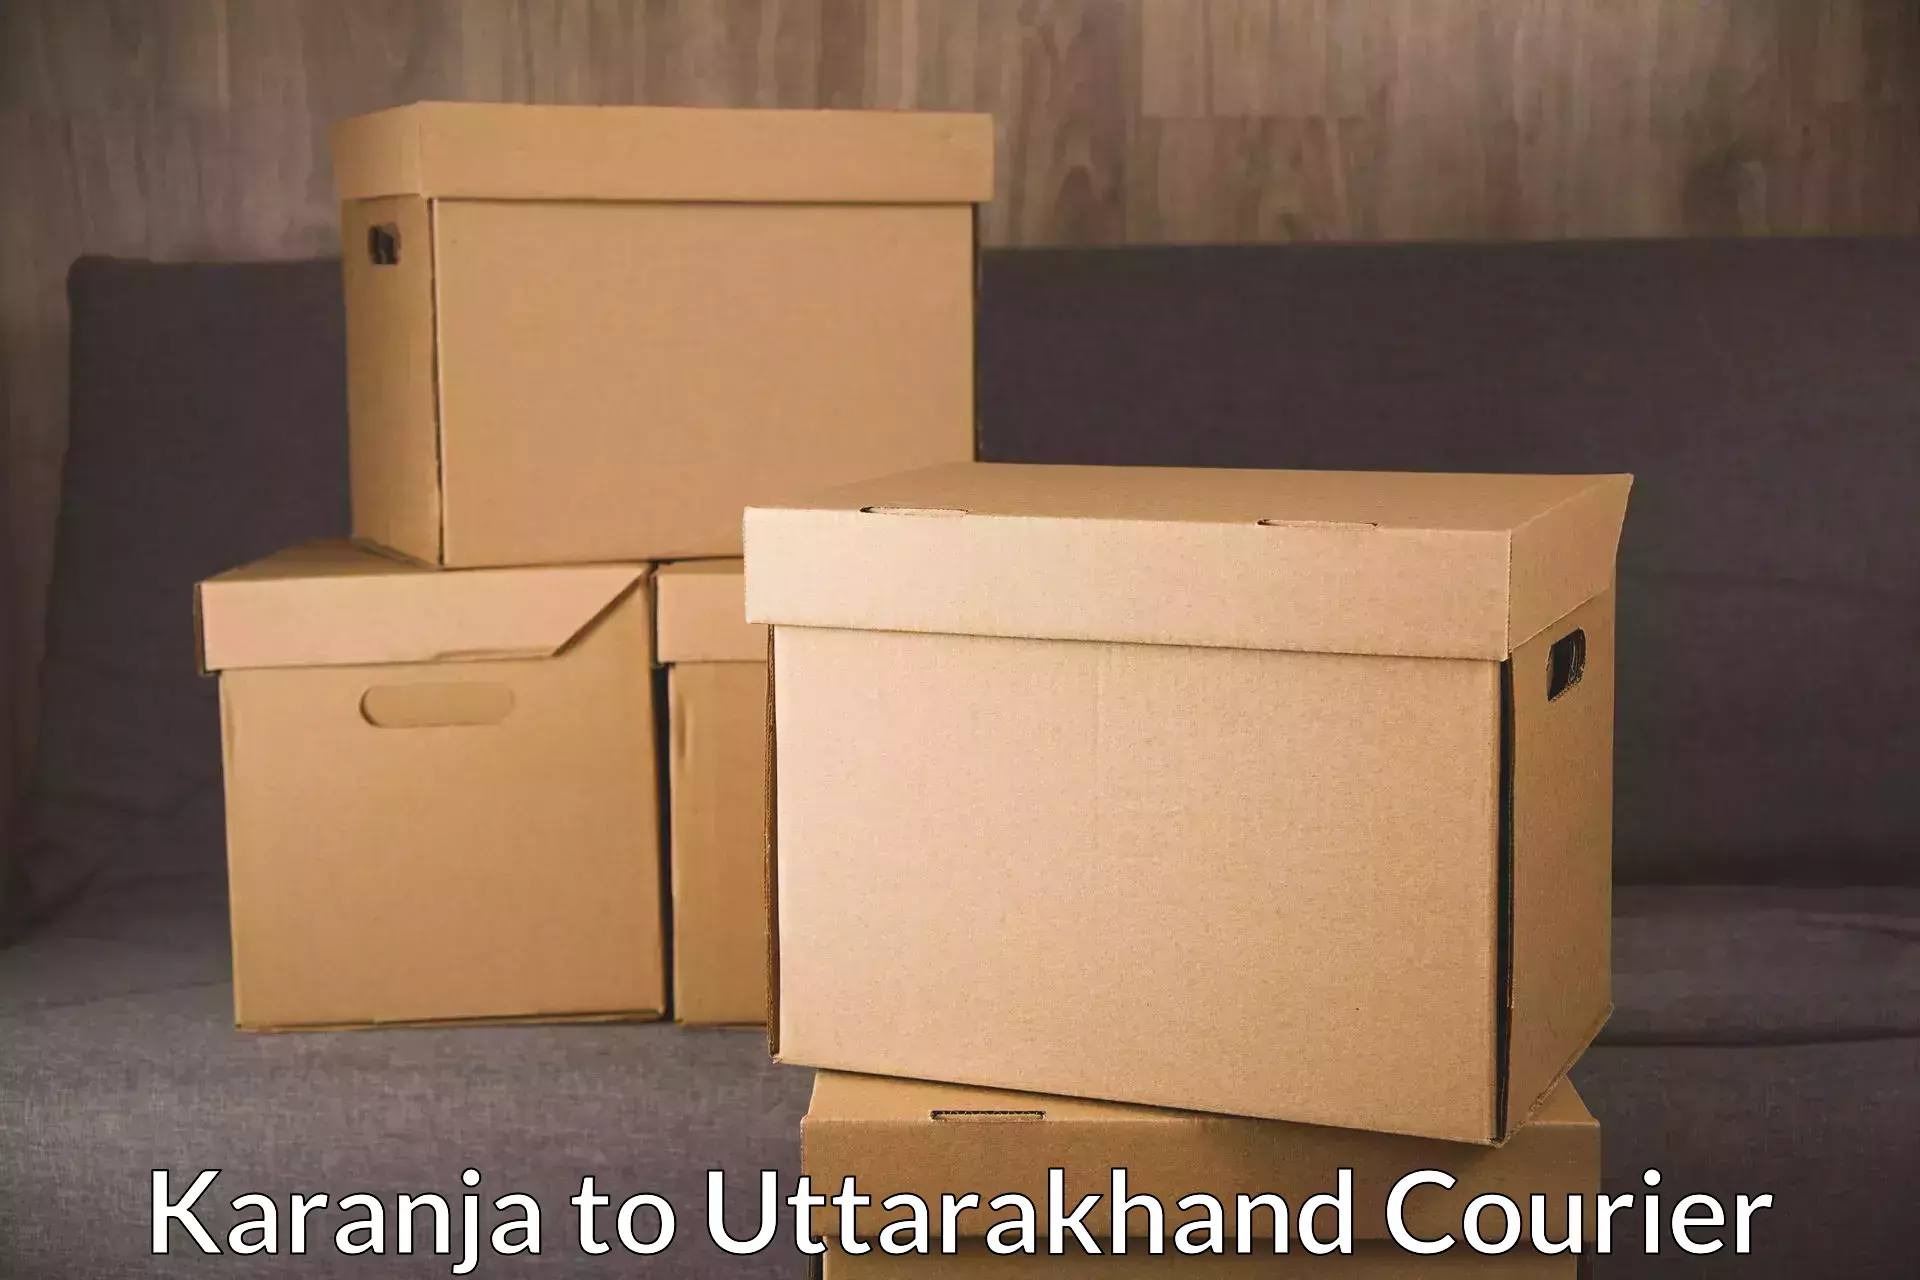 Multi-package shipping Karanja to Didihat